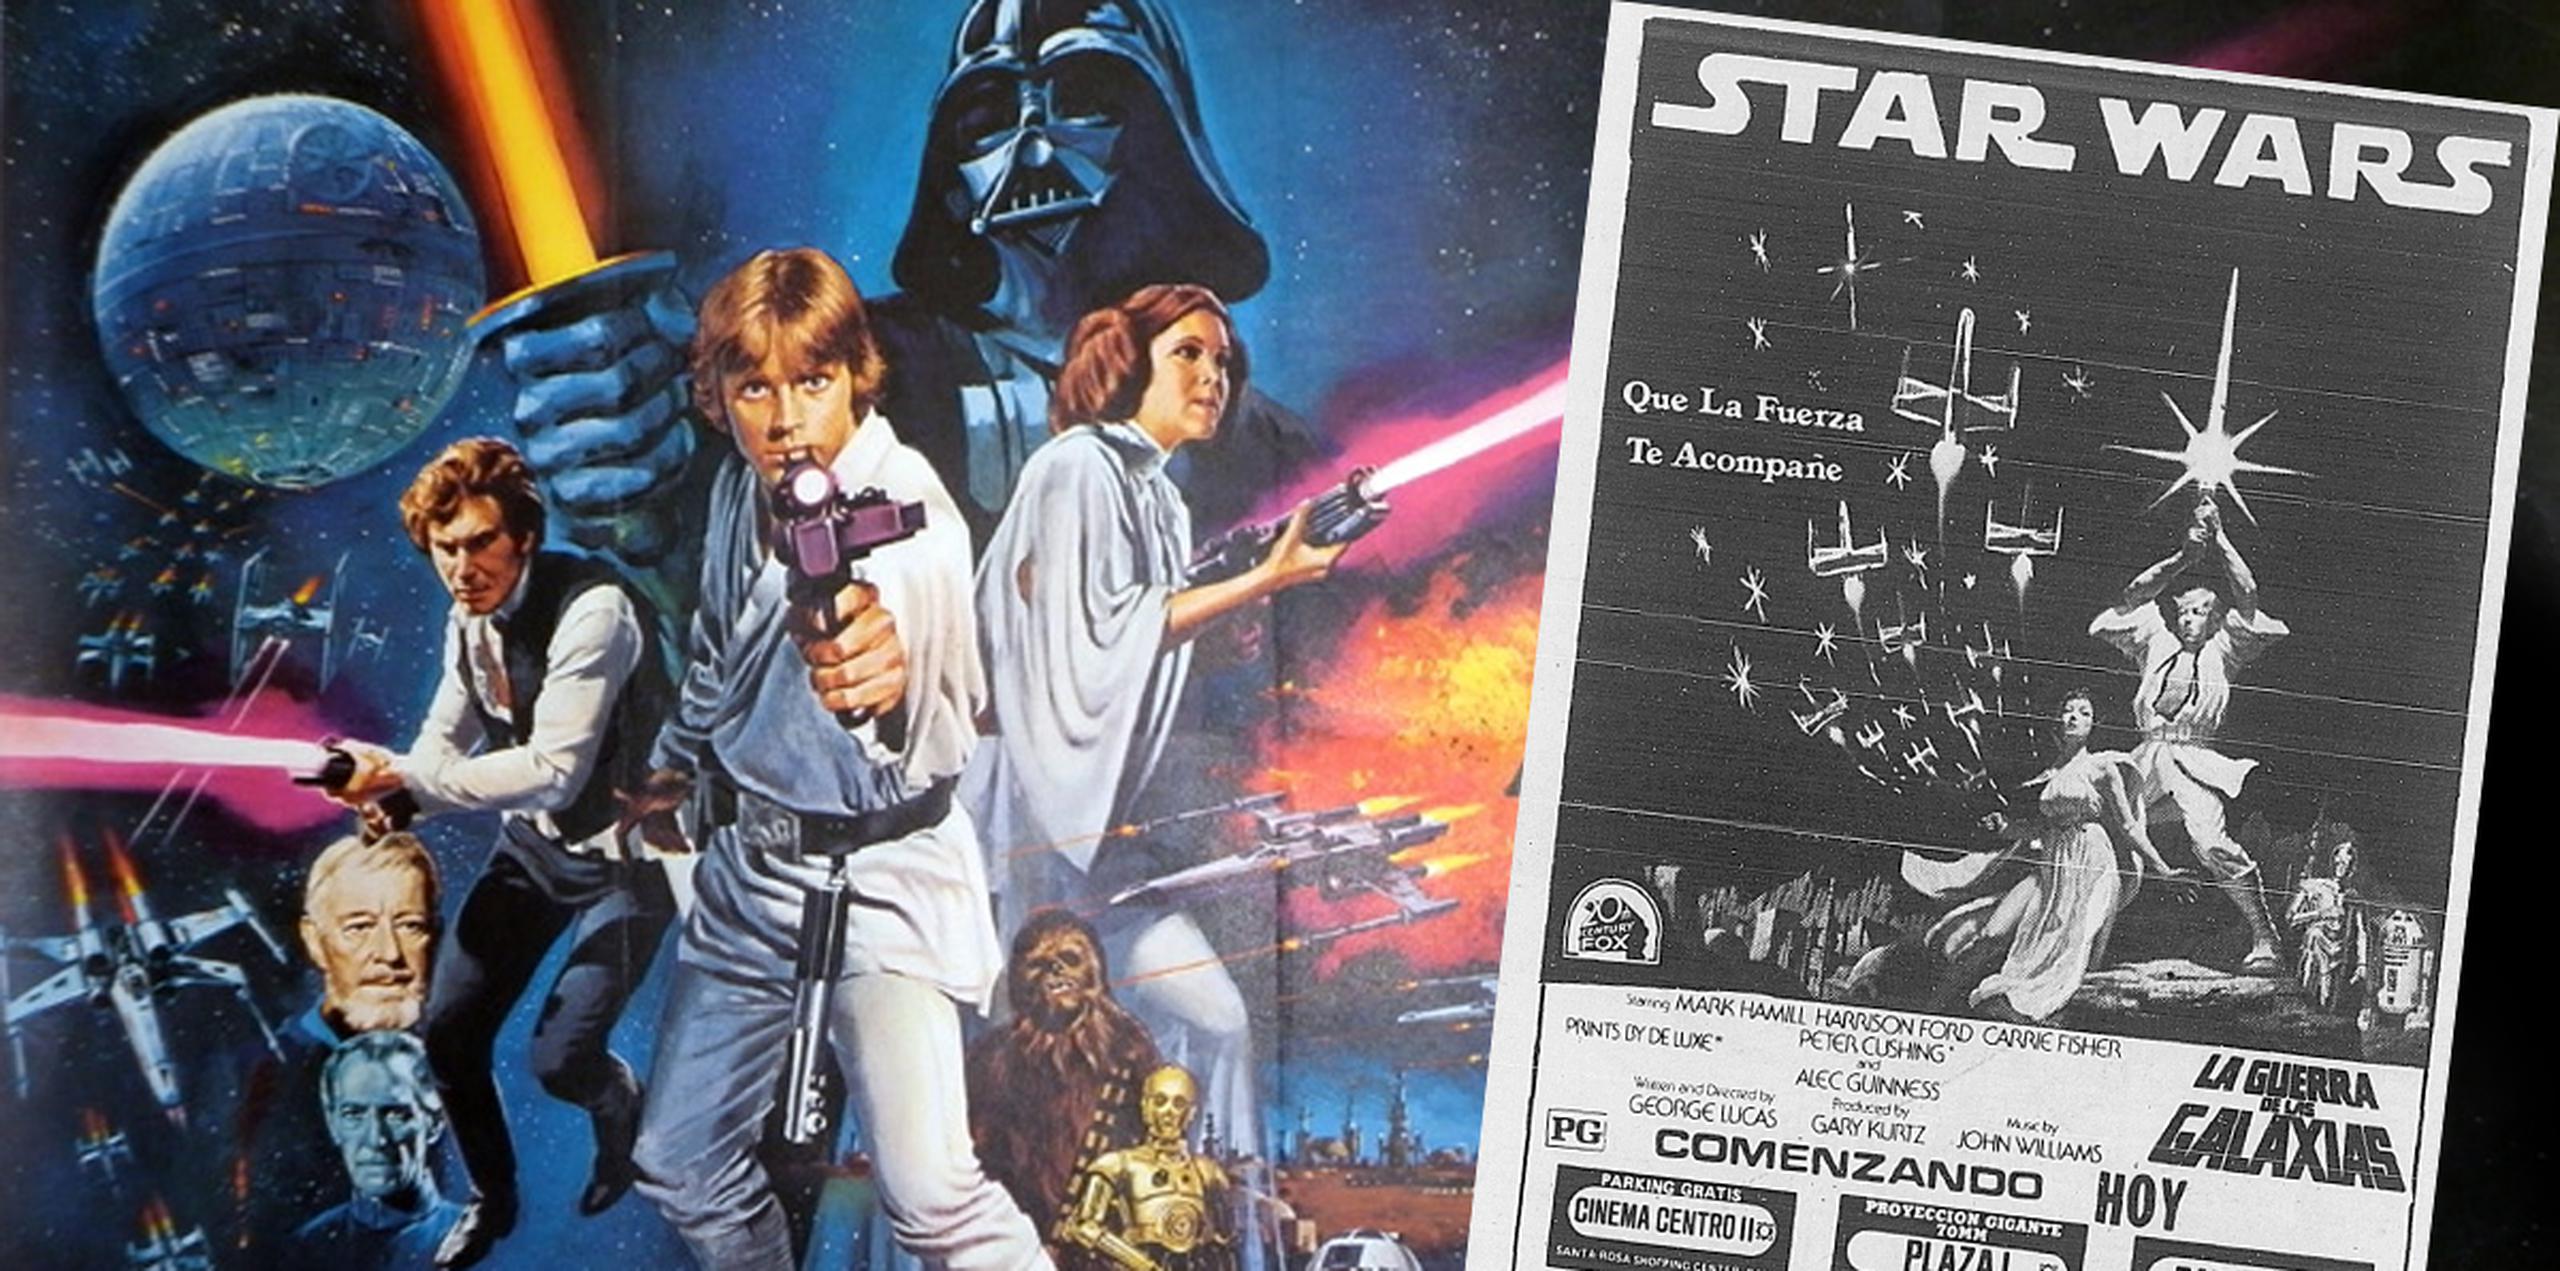 "Star Wars" estrenó en Puerto Rico el 6 de octubre de 1977, poco más de cuatro meses después de su debut en Estados Unidos.